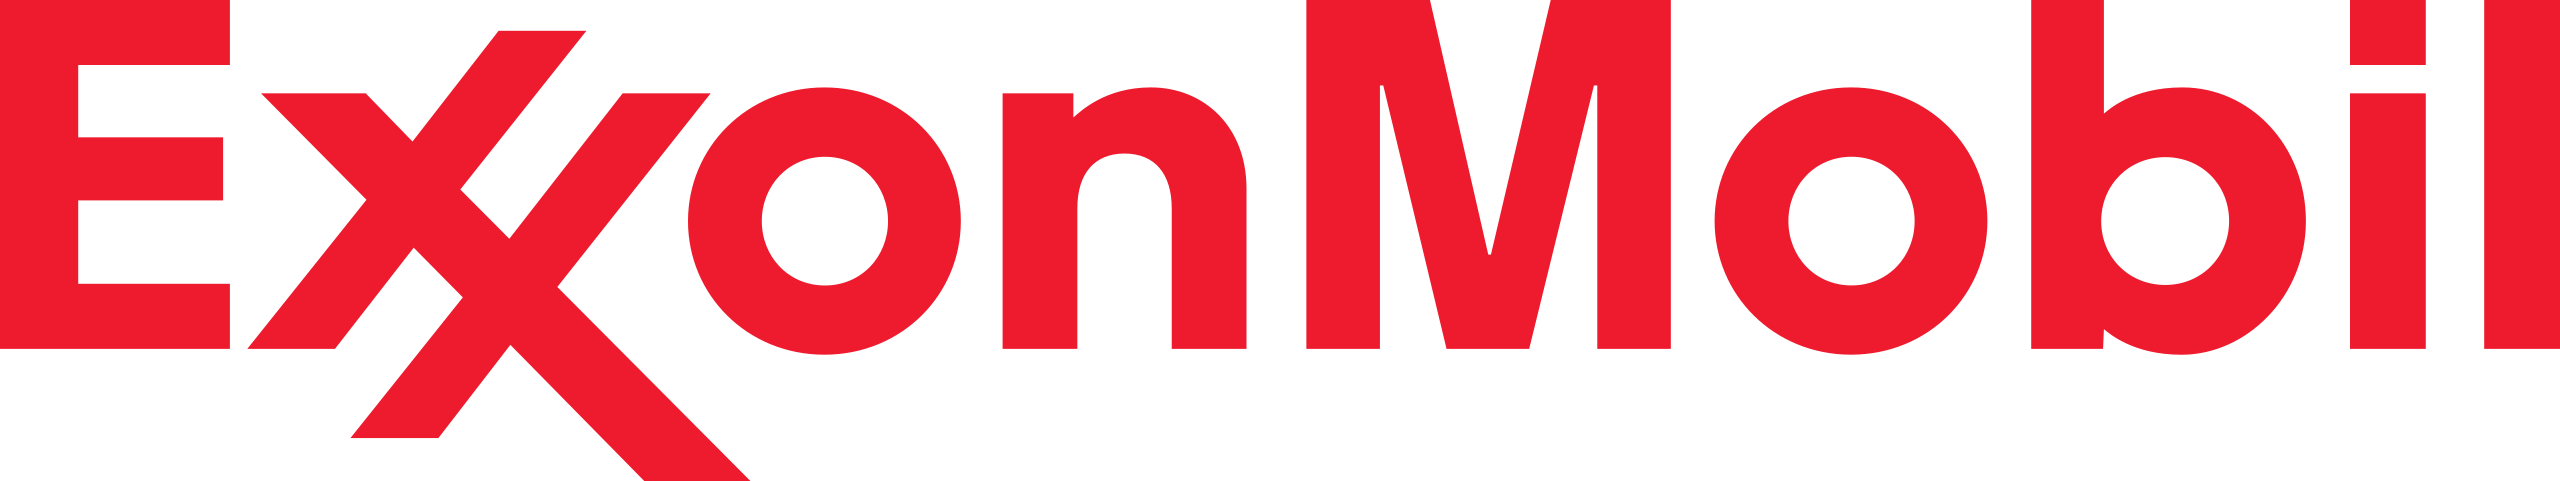 Logo_Exxon_Mobil.png